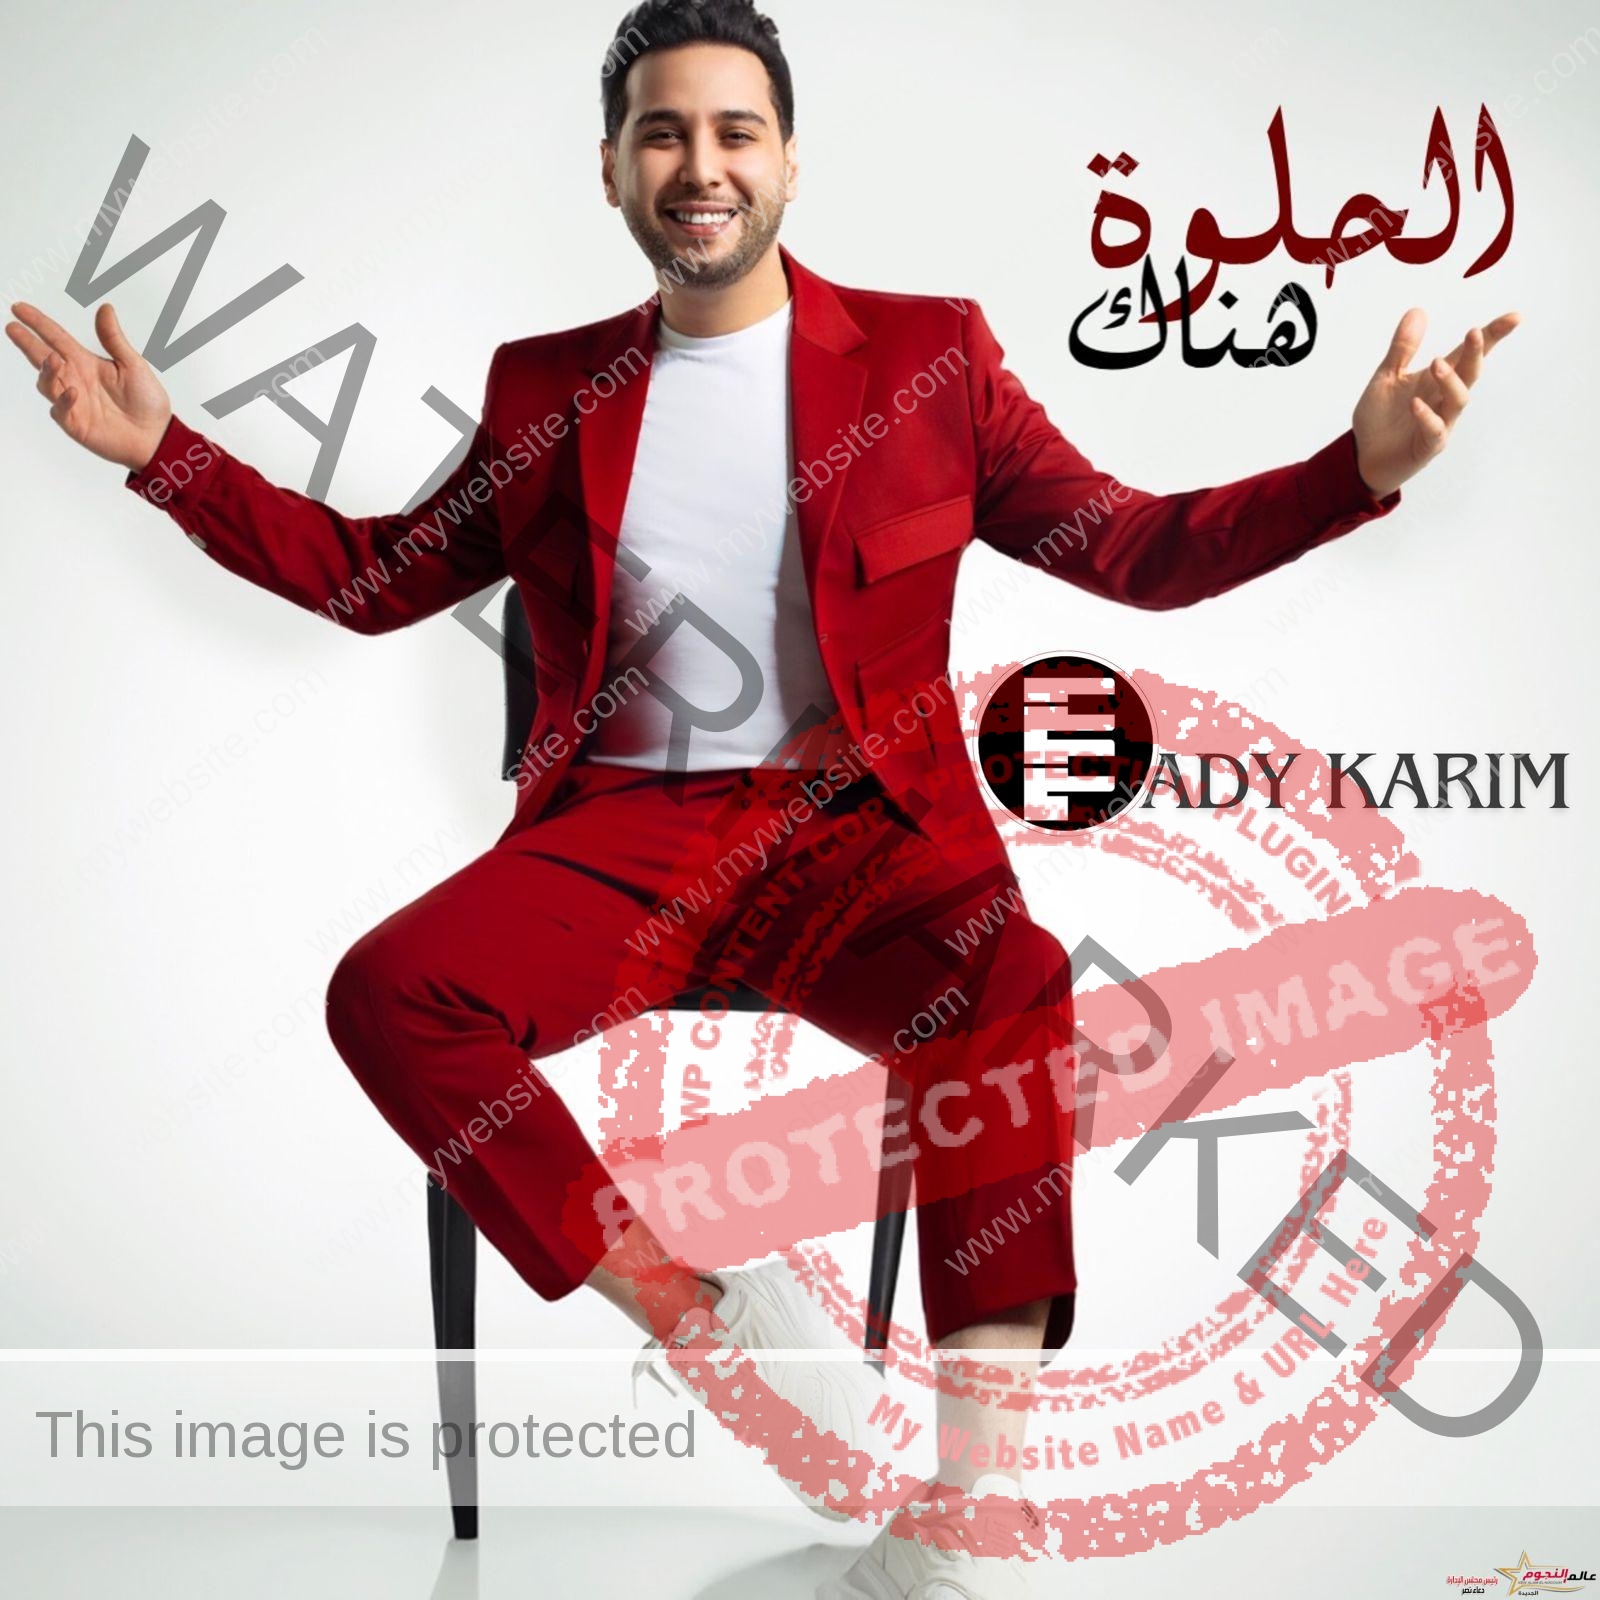 الحلوة هناك أحدث اغاني المطرب التونسي فادي كريم باللهجة المصرية